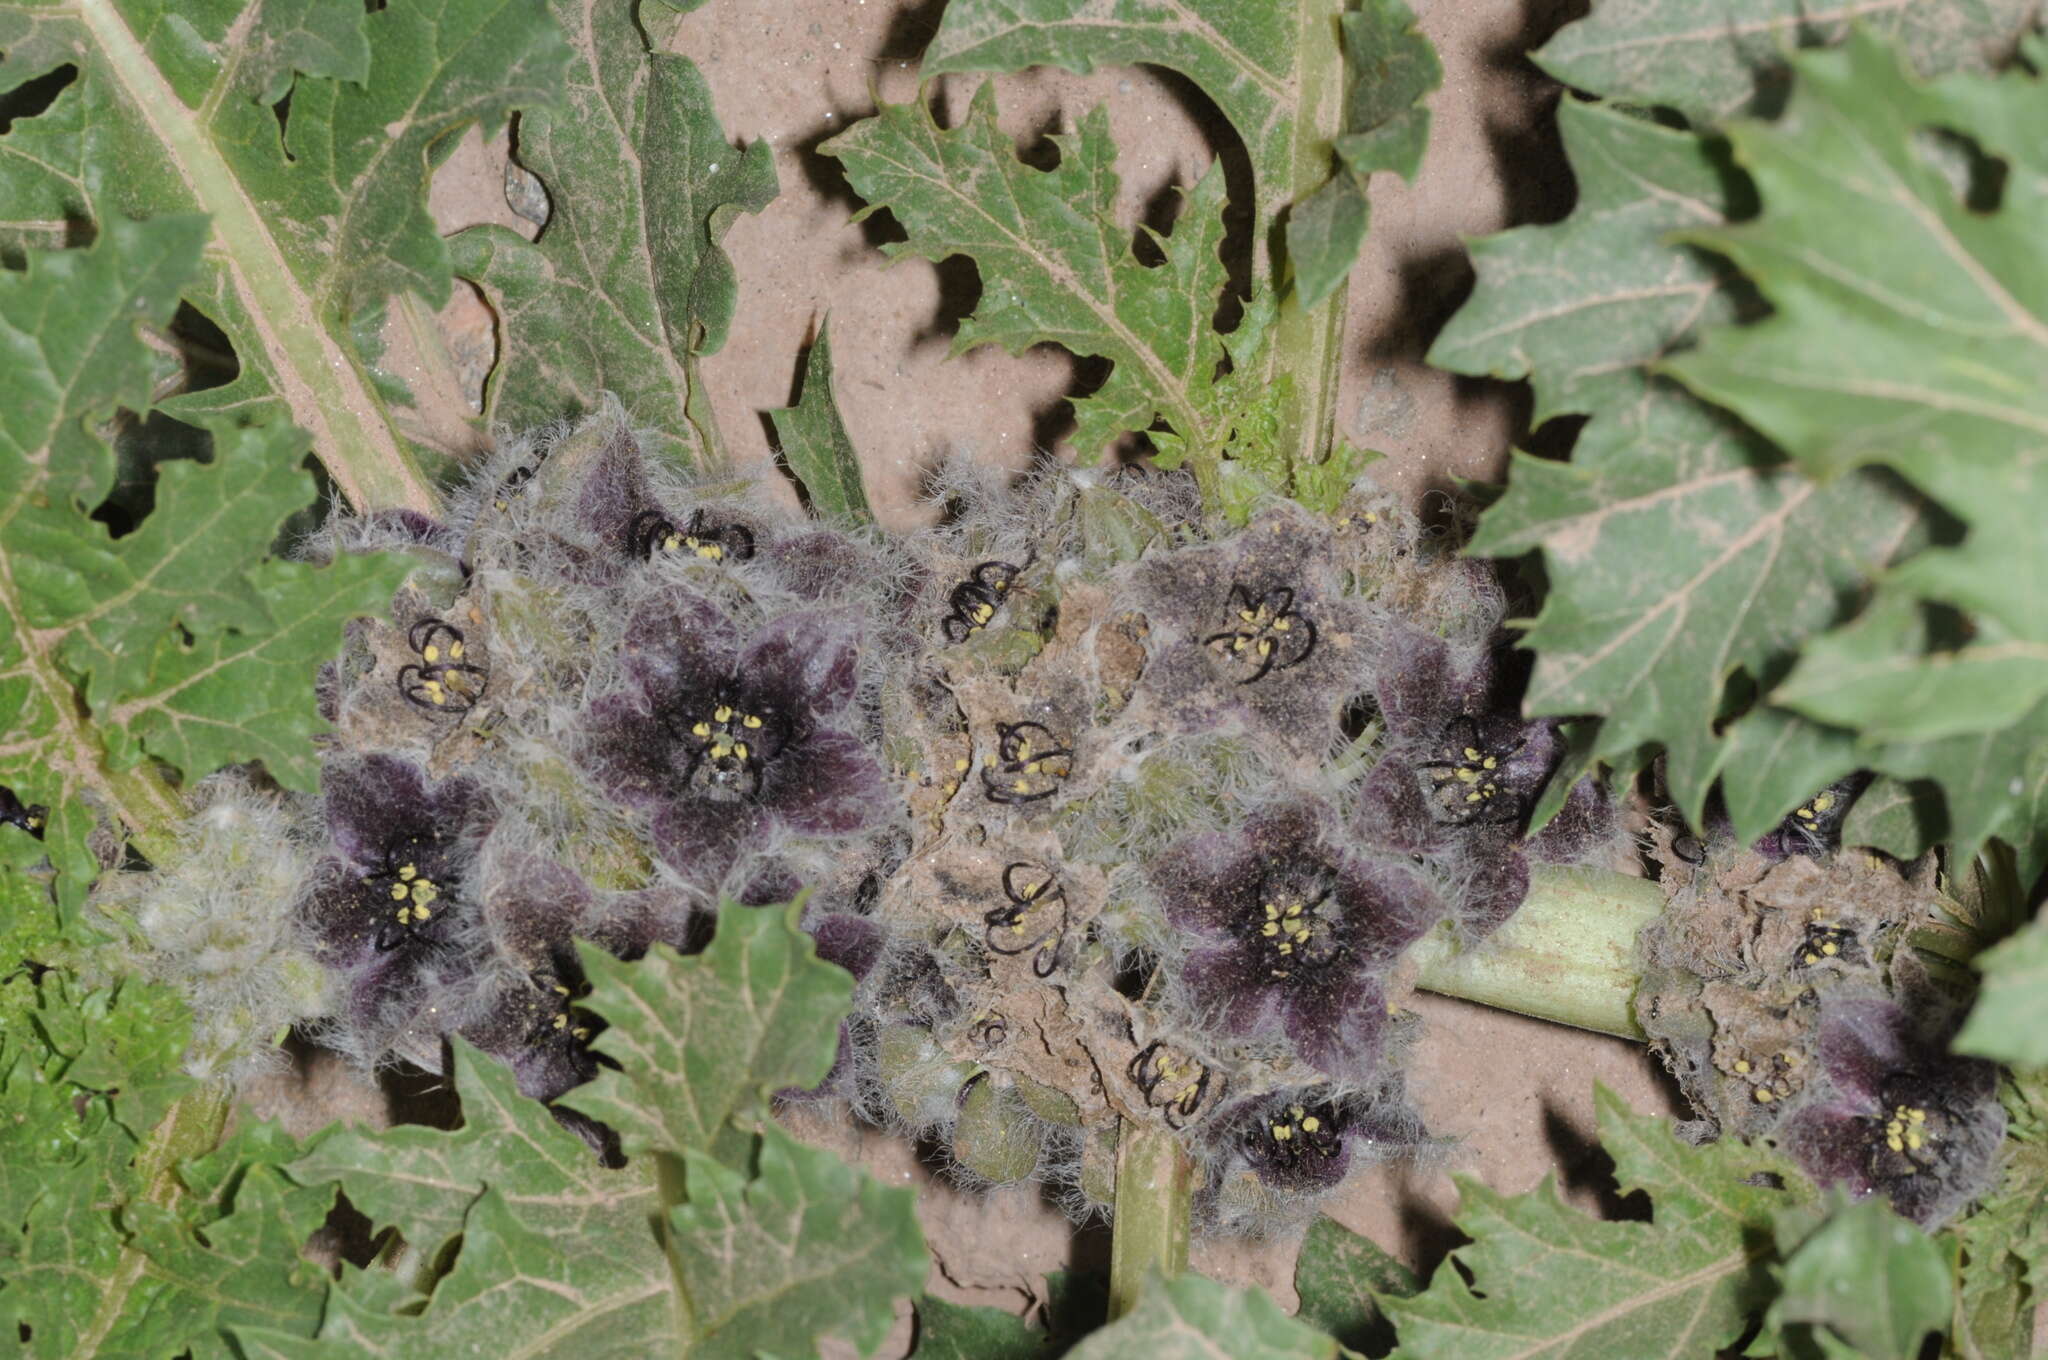 Image of Jaborosa rotacea (Lillo) A. T. Hunziker & G. Barboza